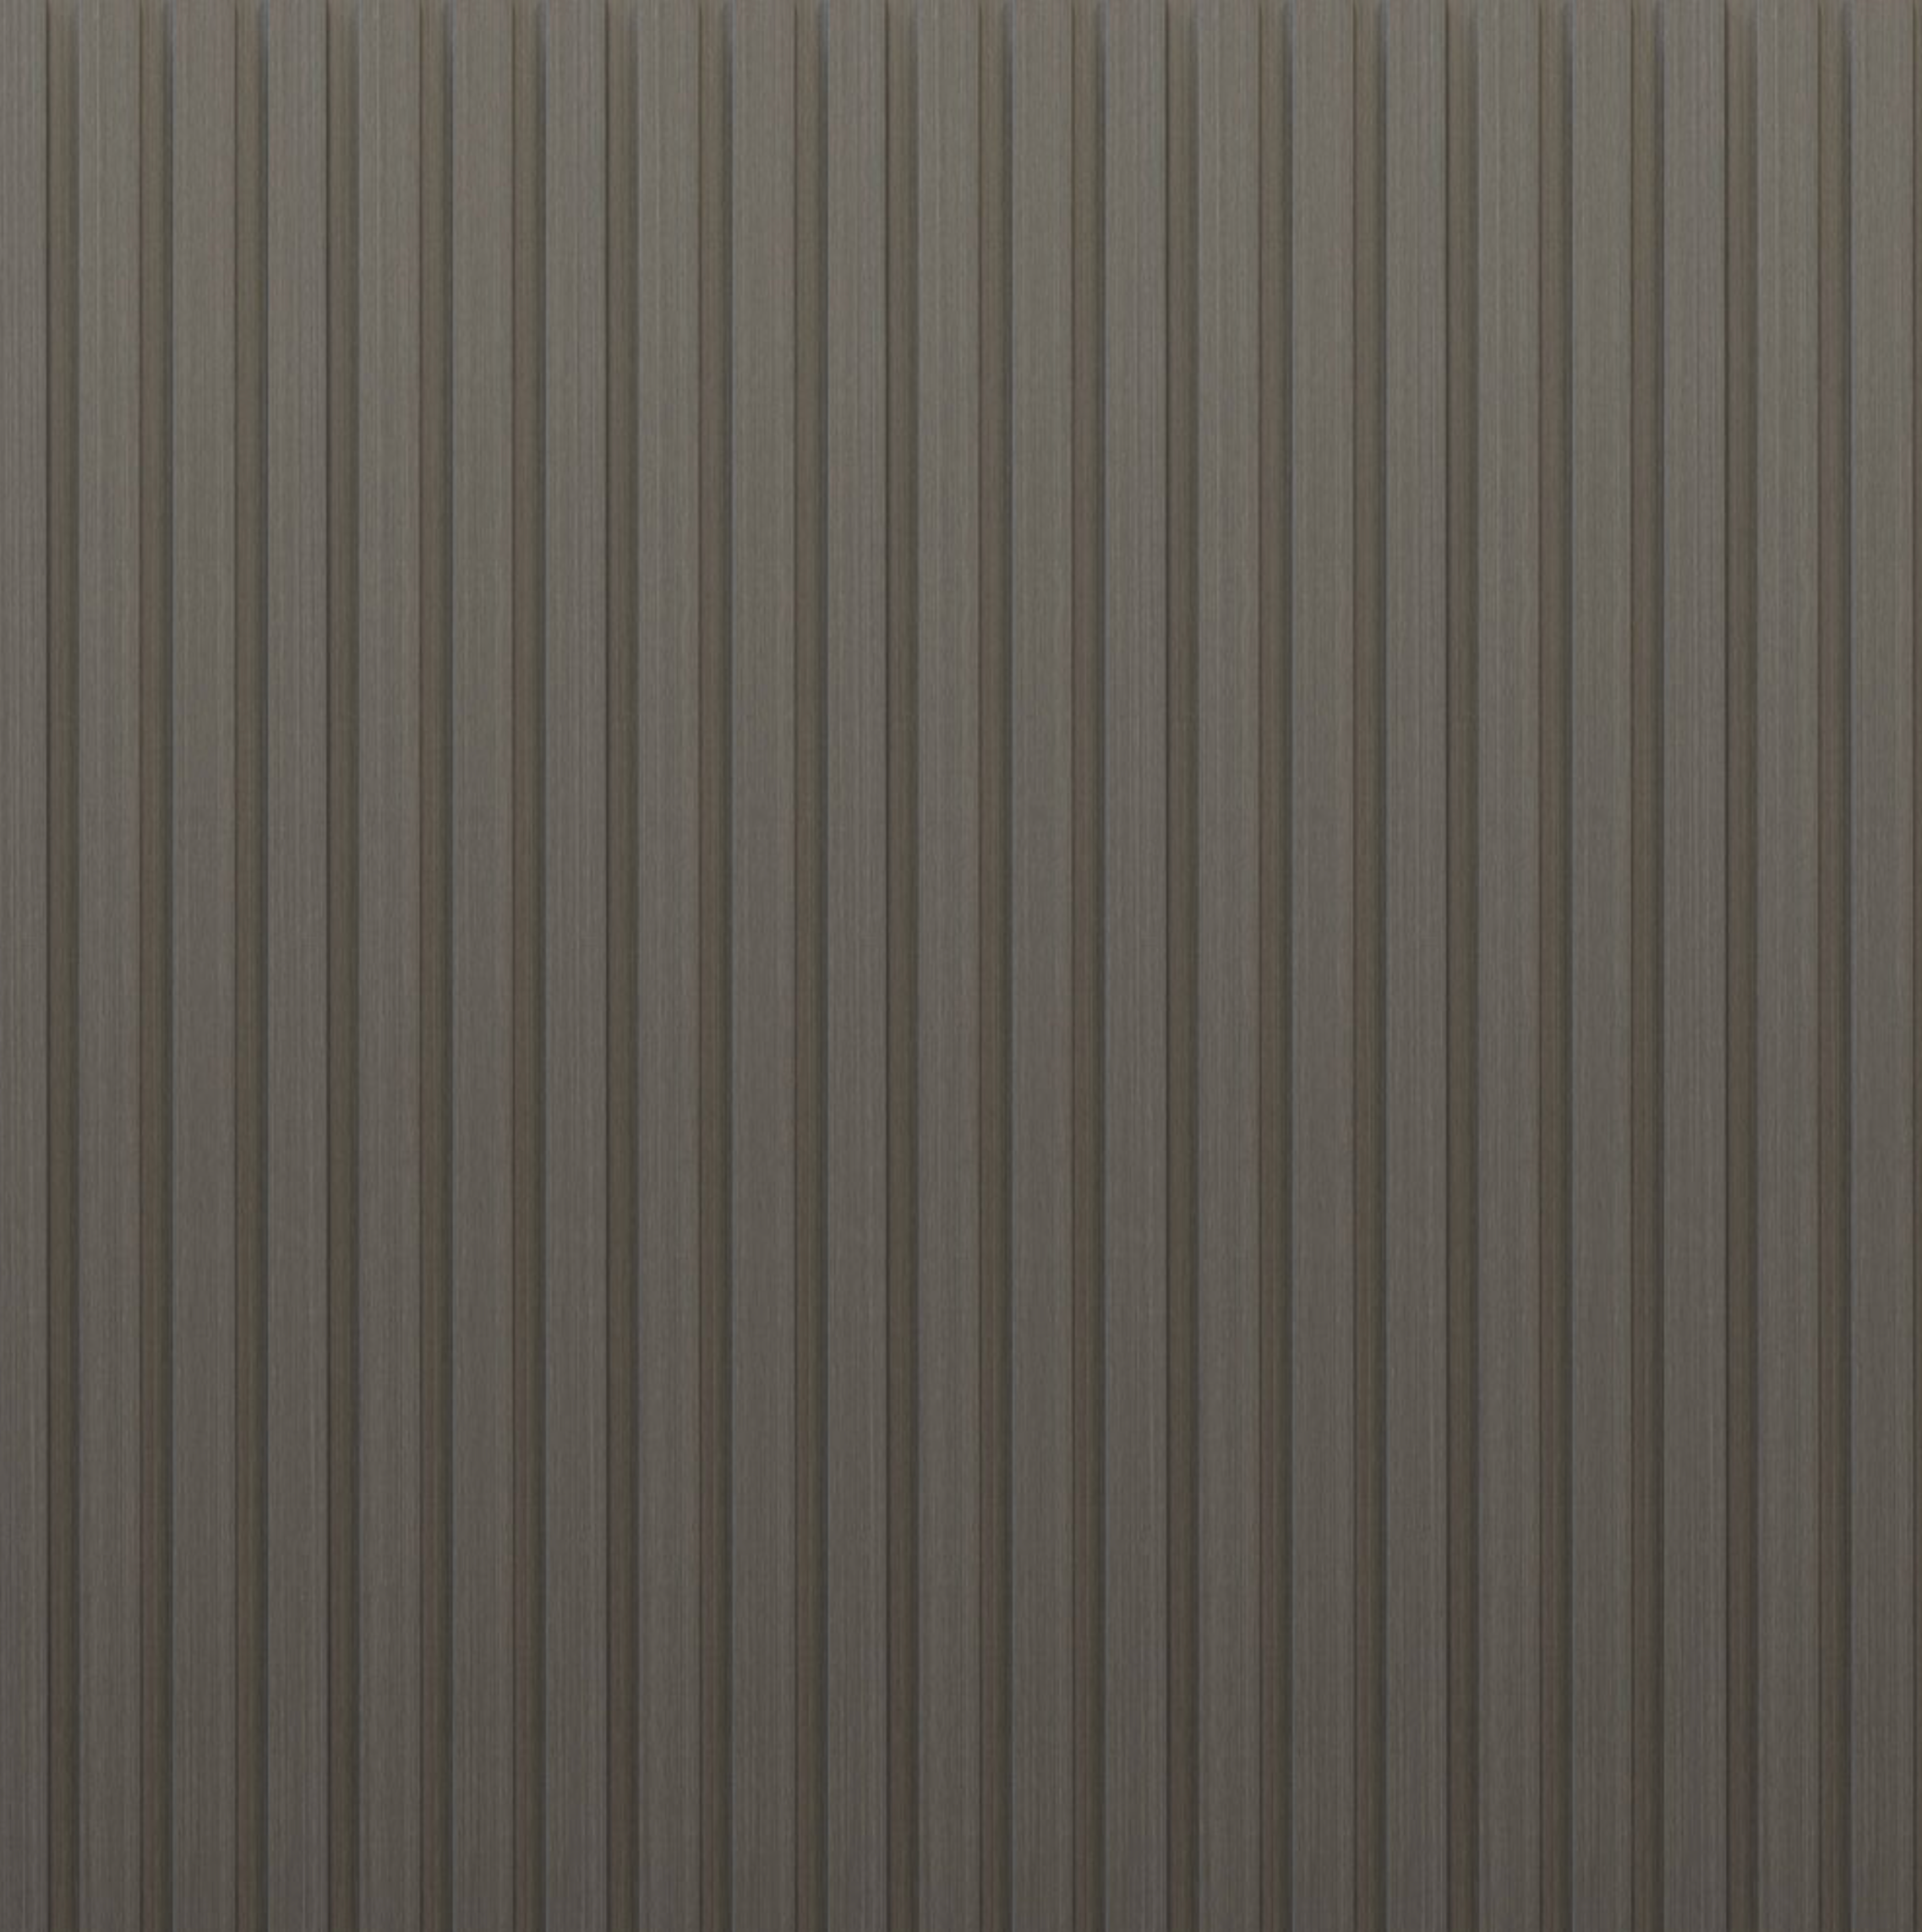 PVC Thermo-Slat Wall Panel - Smokey Grey